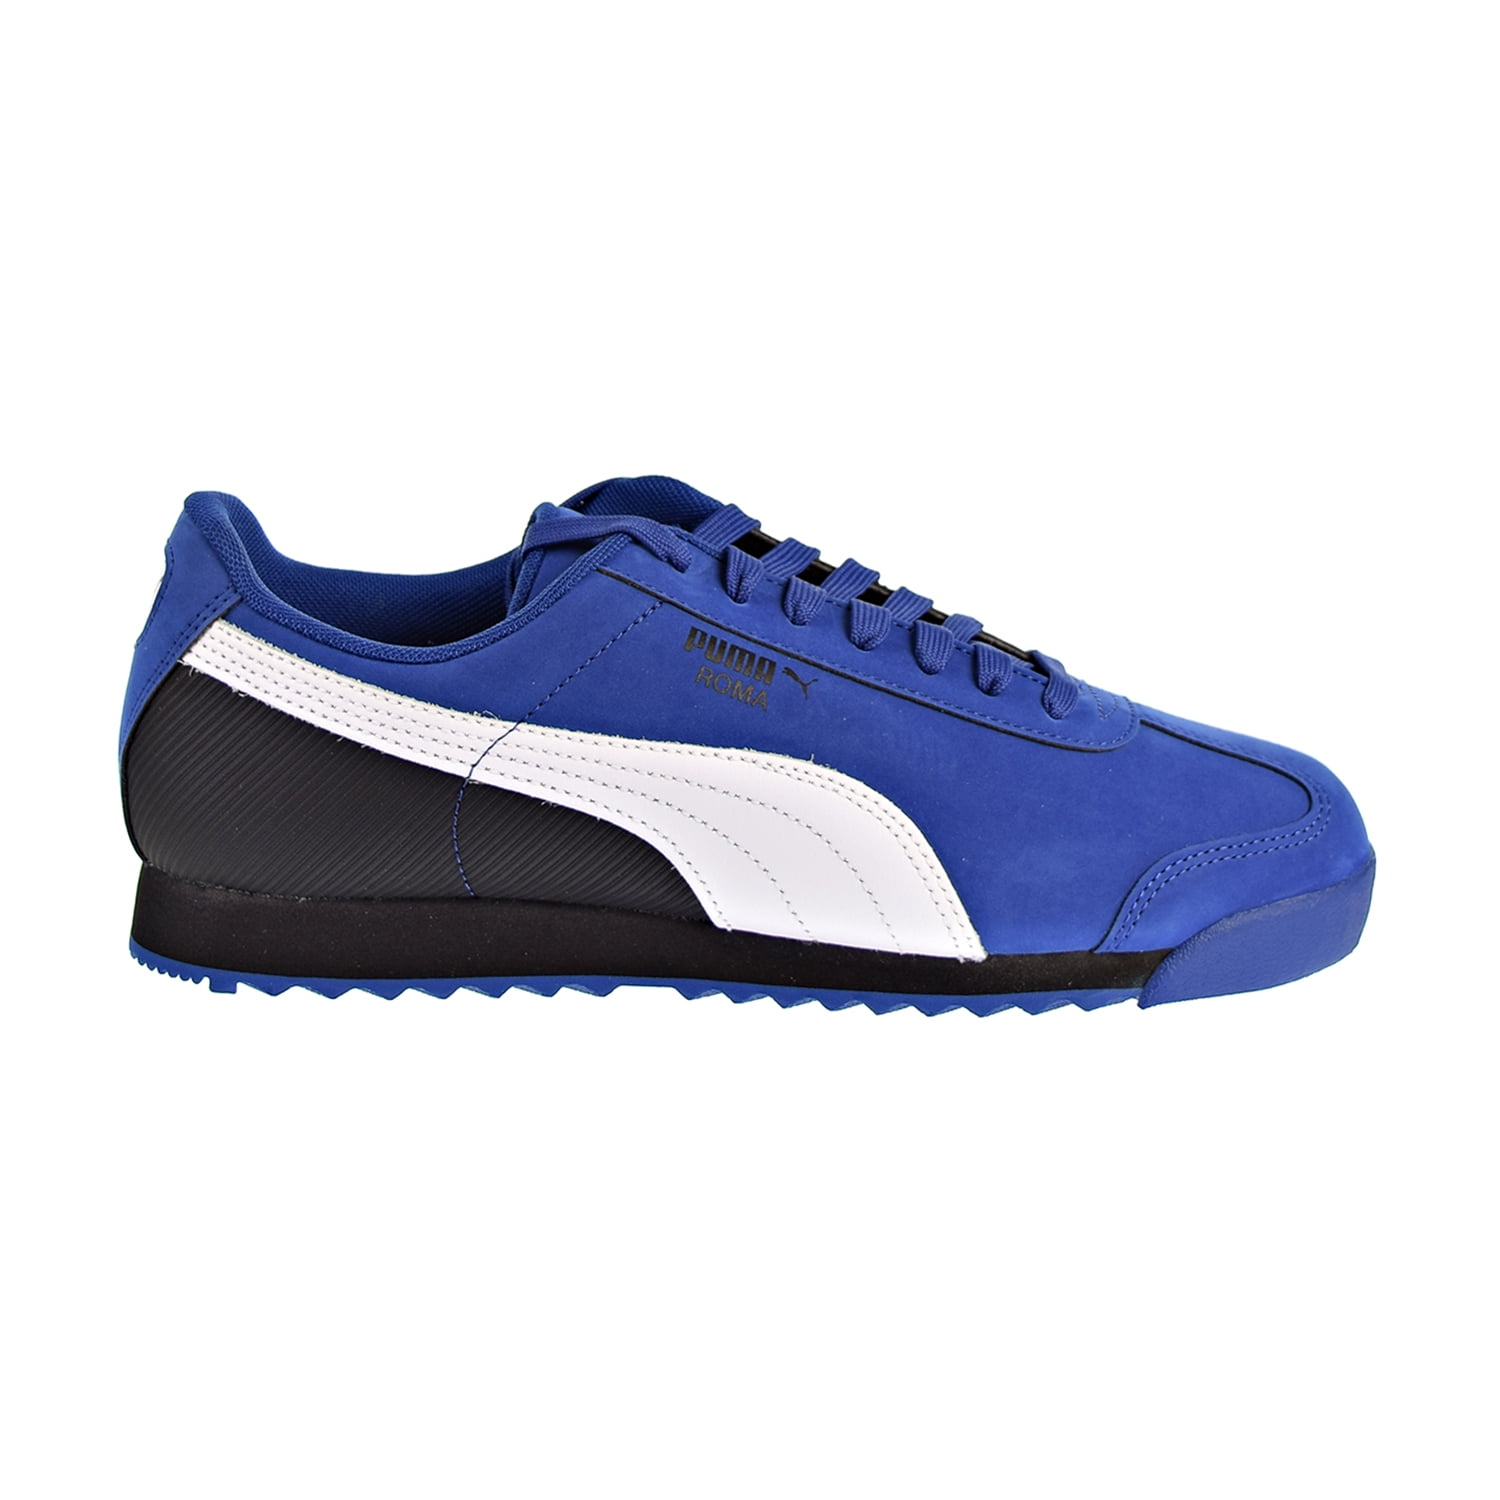 Puma Roma Retro Nubuck Men's Shoes Blue/ White/ Black 368266-01 ...